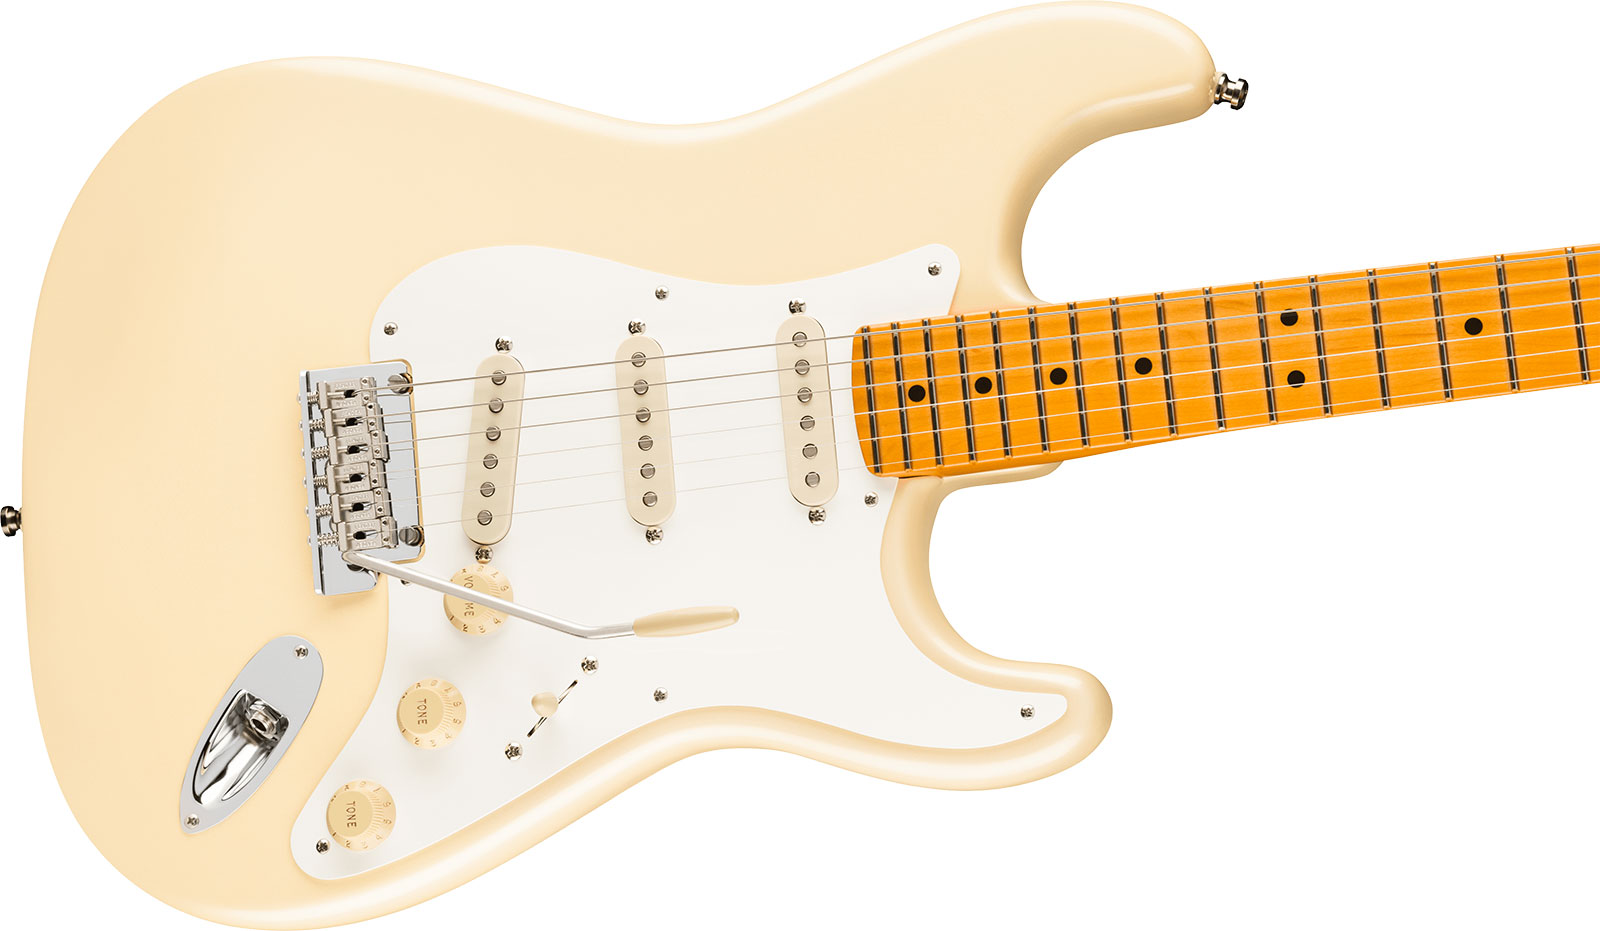 Fender Lincoln Brewster Strat Usa Signature 3s Dimarzio Trem Mn - Olympic Pearl - Retro-Rock-E-Gitarre - Variation 2